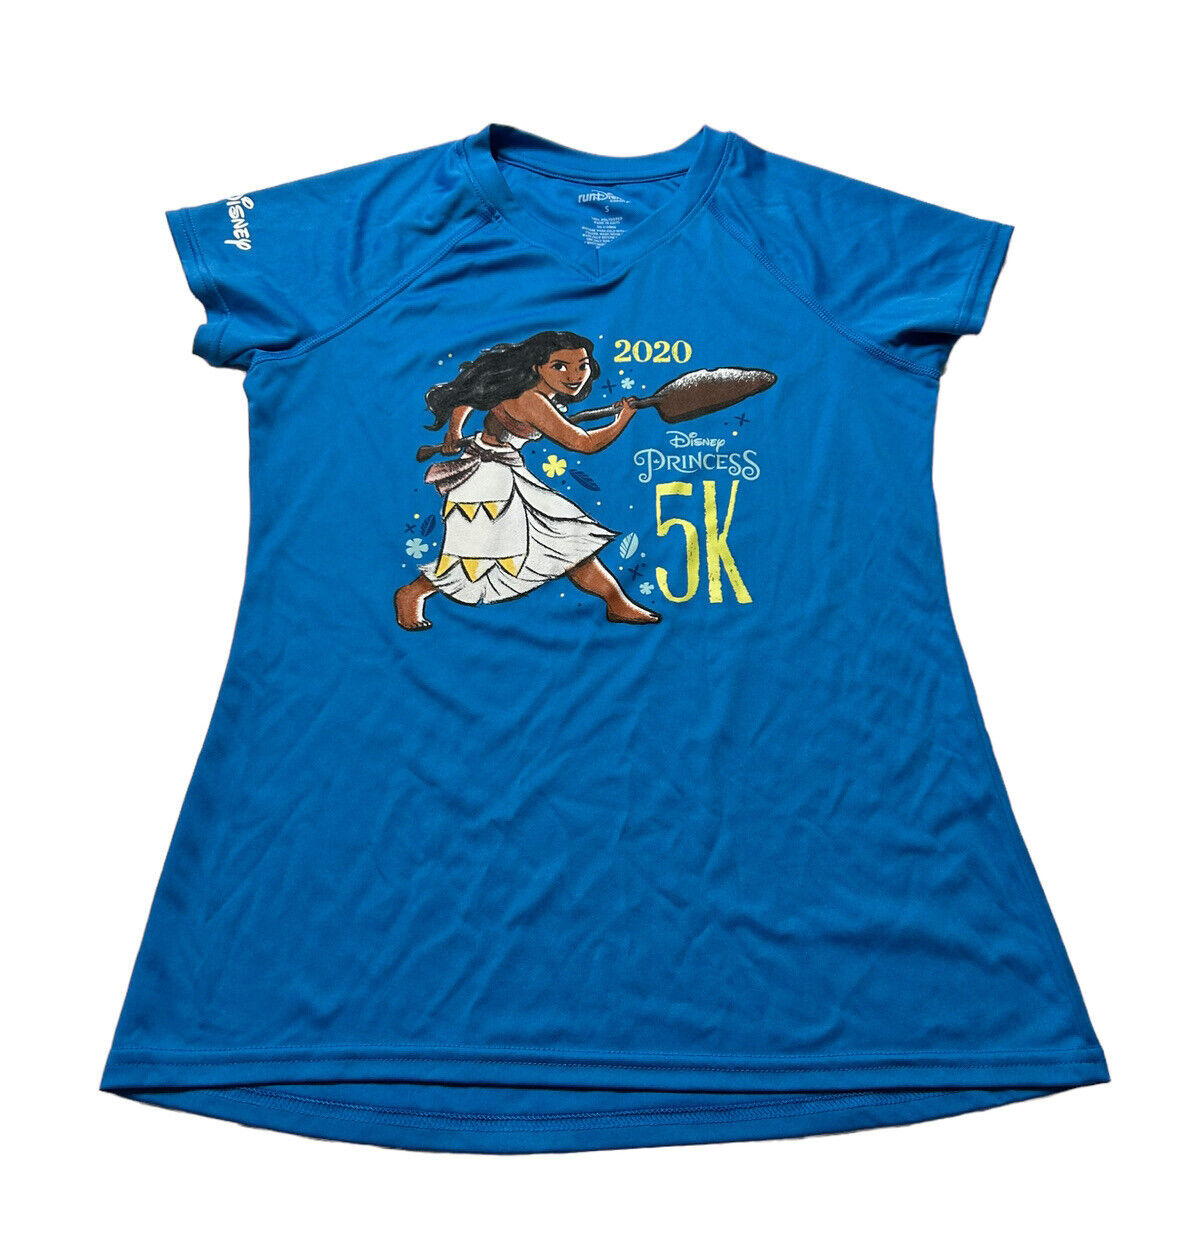 RunDisney Princess 5K Race T-Shirt 2020 Moana Finisher Women’s Size Small Blue